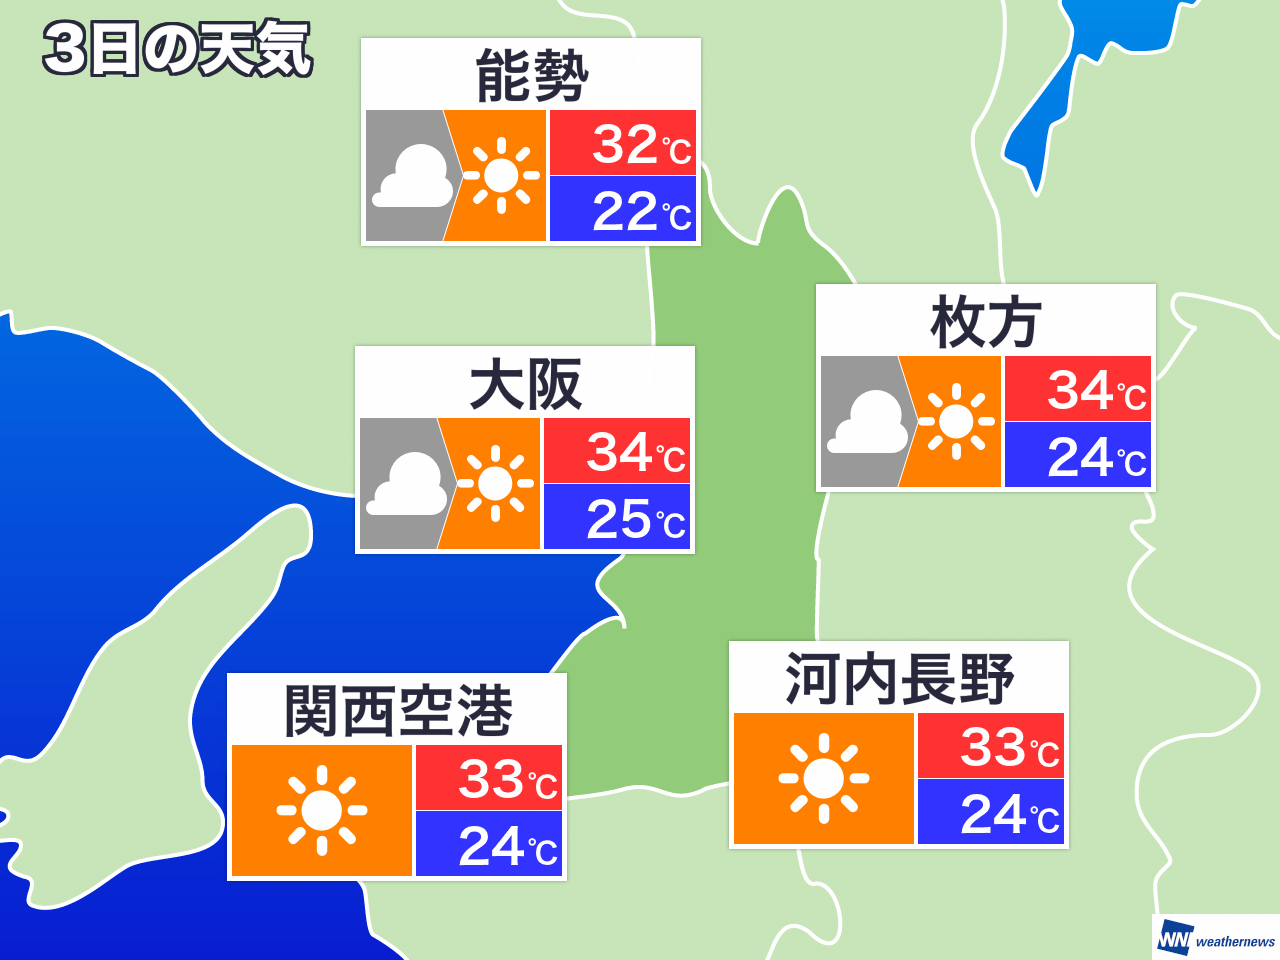 3月7日 土 大阪府の今日の天気 ウェザーニュース